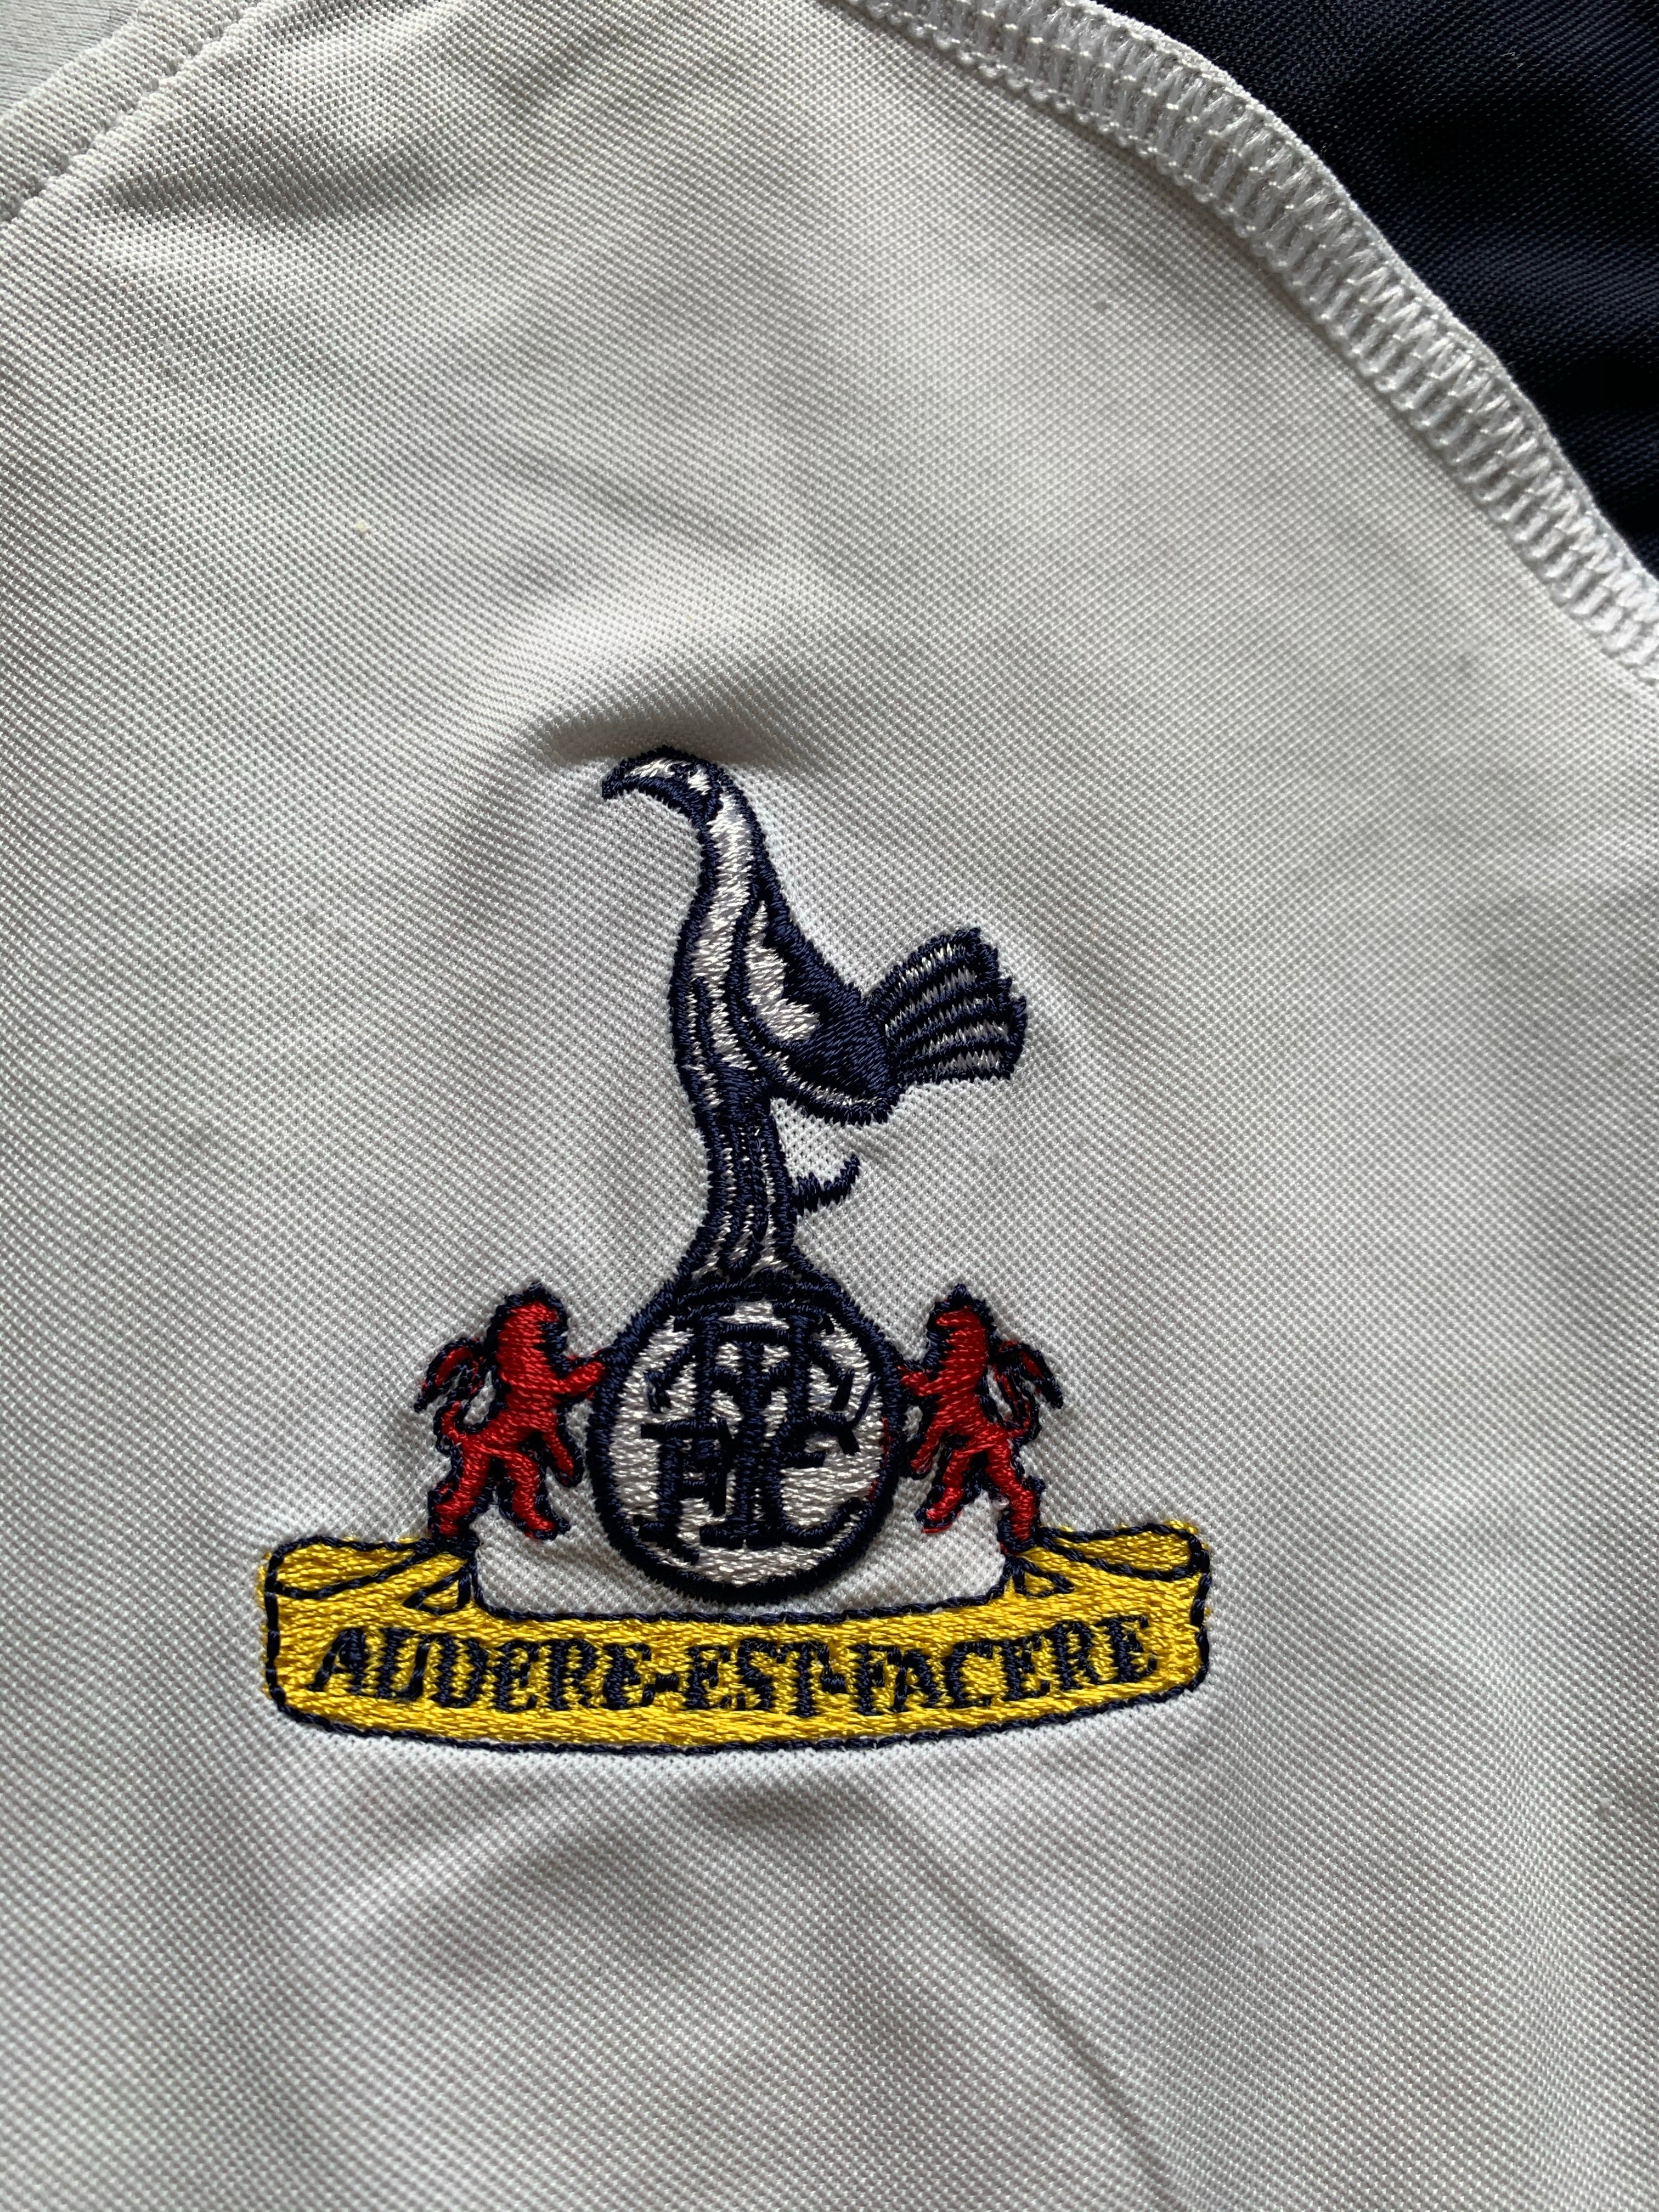 2004/05 Tottenham Hotspur Away Shirt (XL) 6.5/10